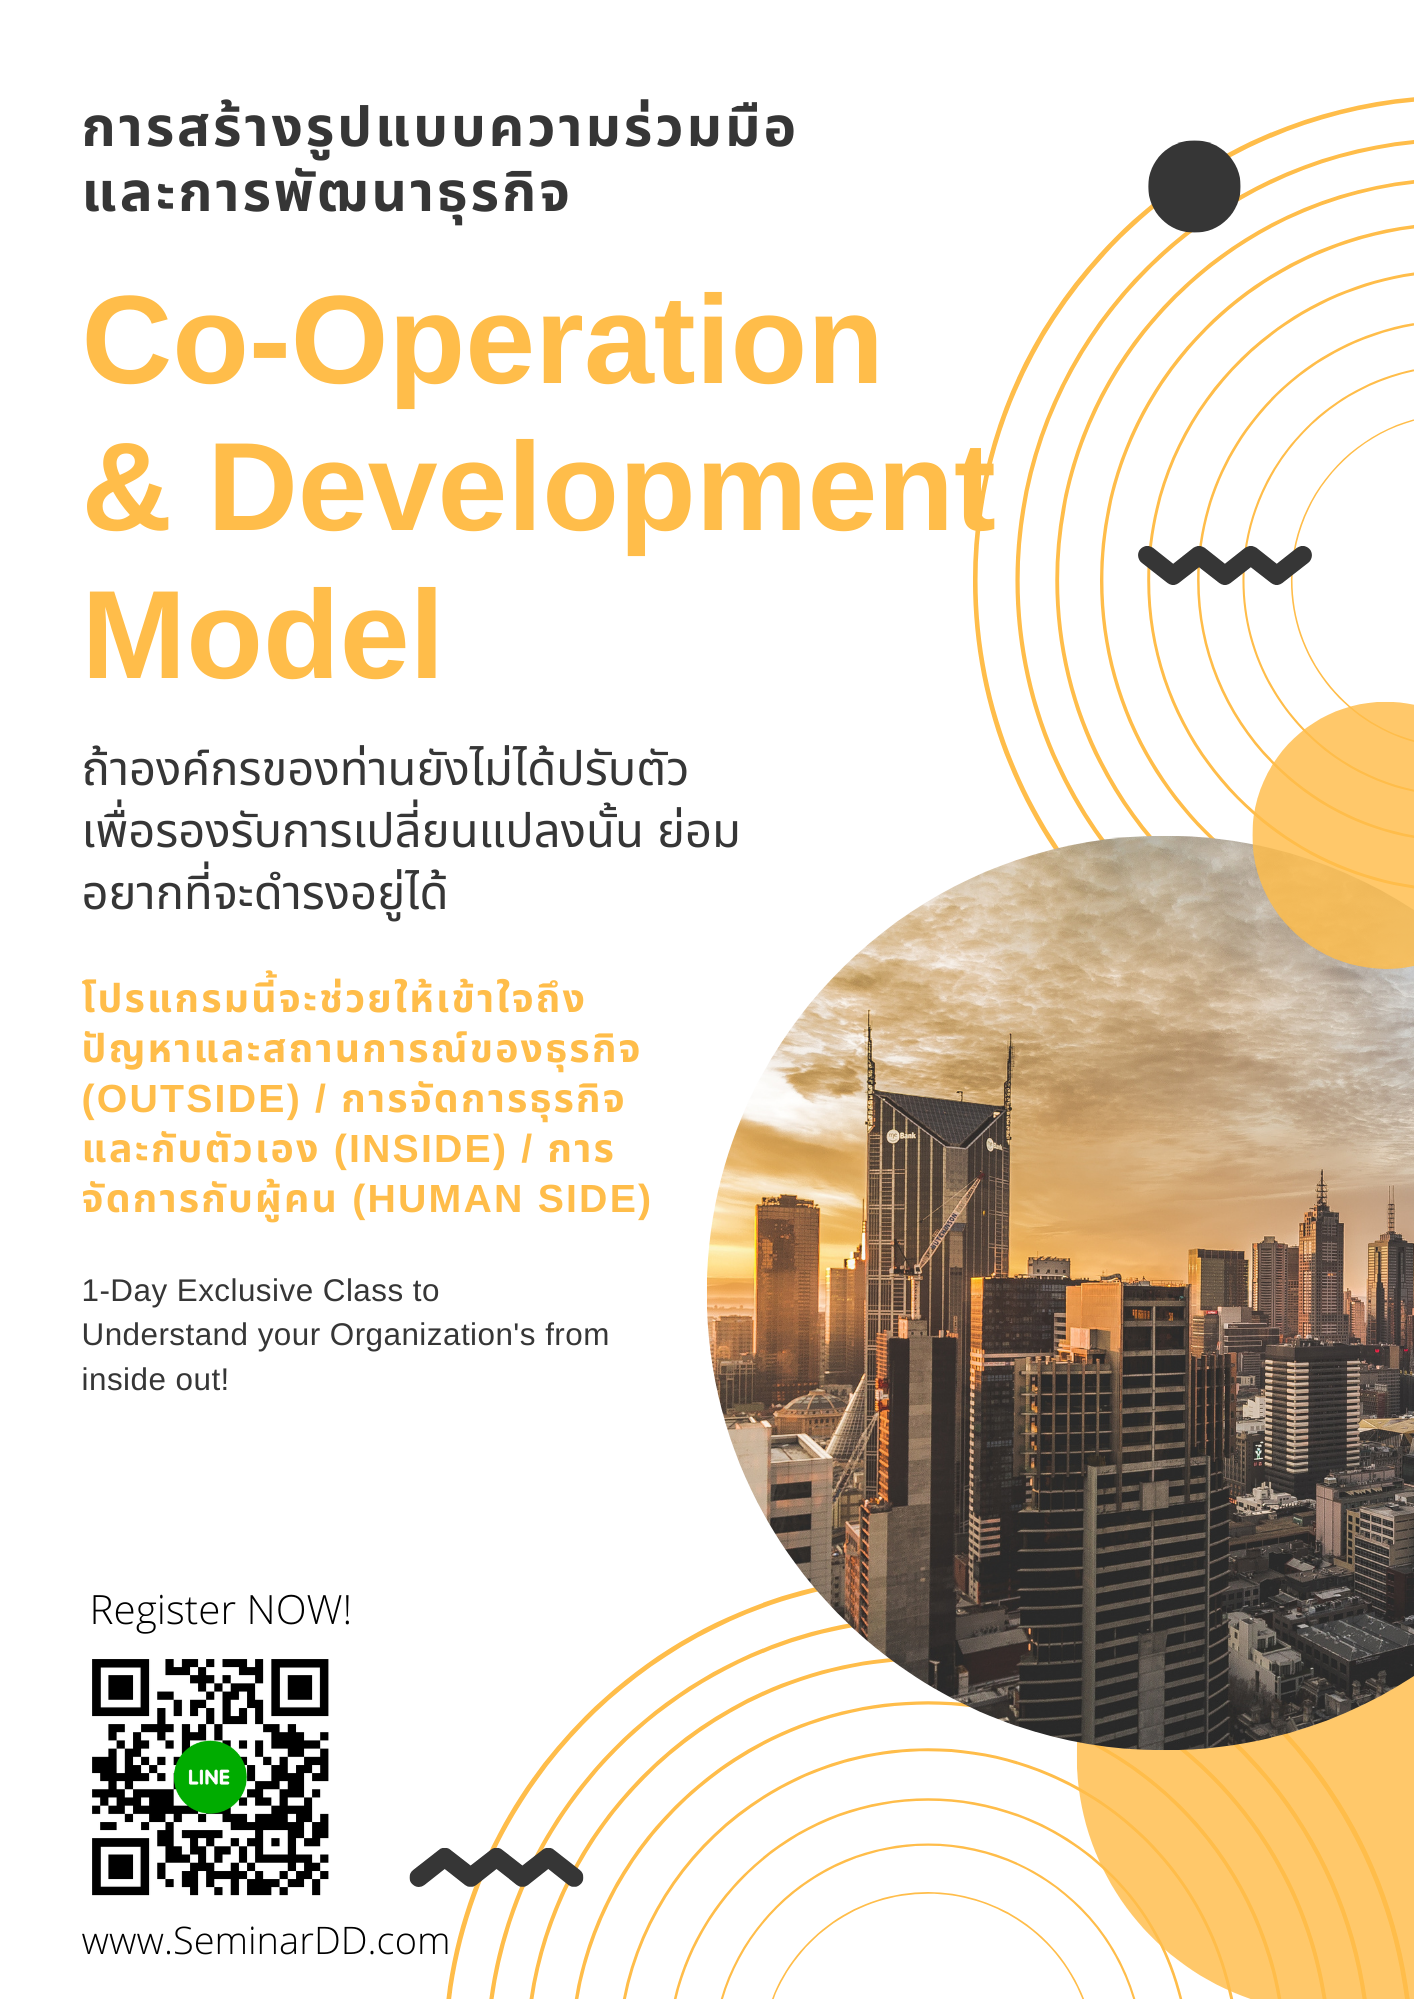 การสร้างรูปแบบความร่วมมือและการพัฒนาธุรกิจ (Co-operation & Development Model)